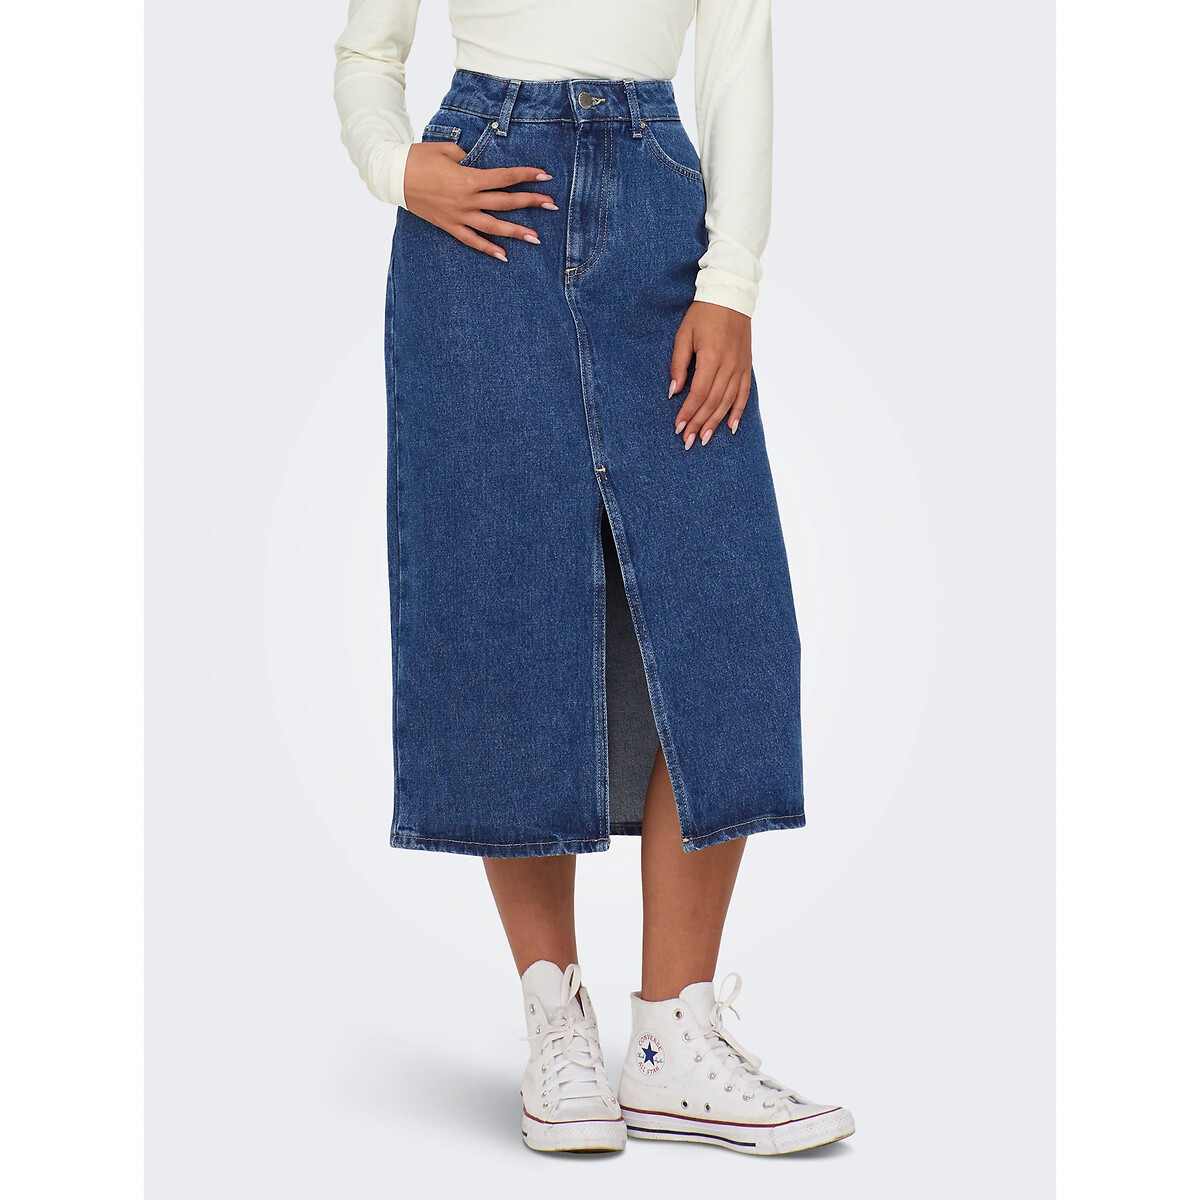 Юбка-миди из джинсовой ткани XL синий юбка миди из джинсовой ткани l синий